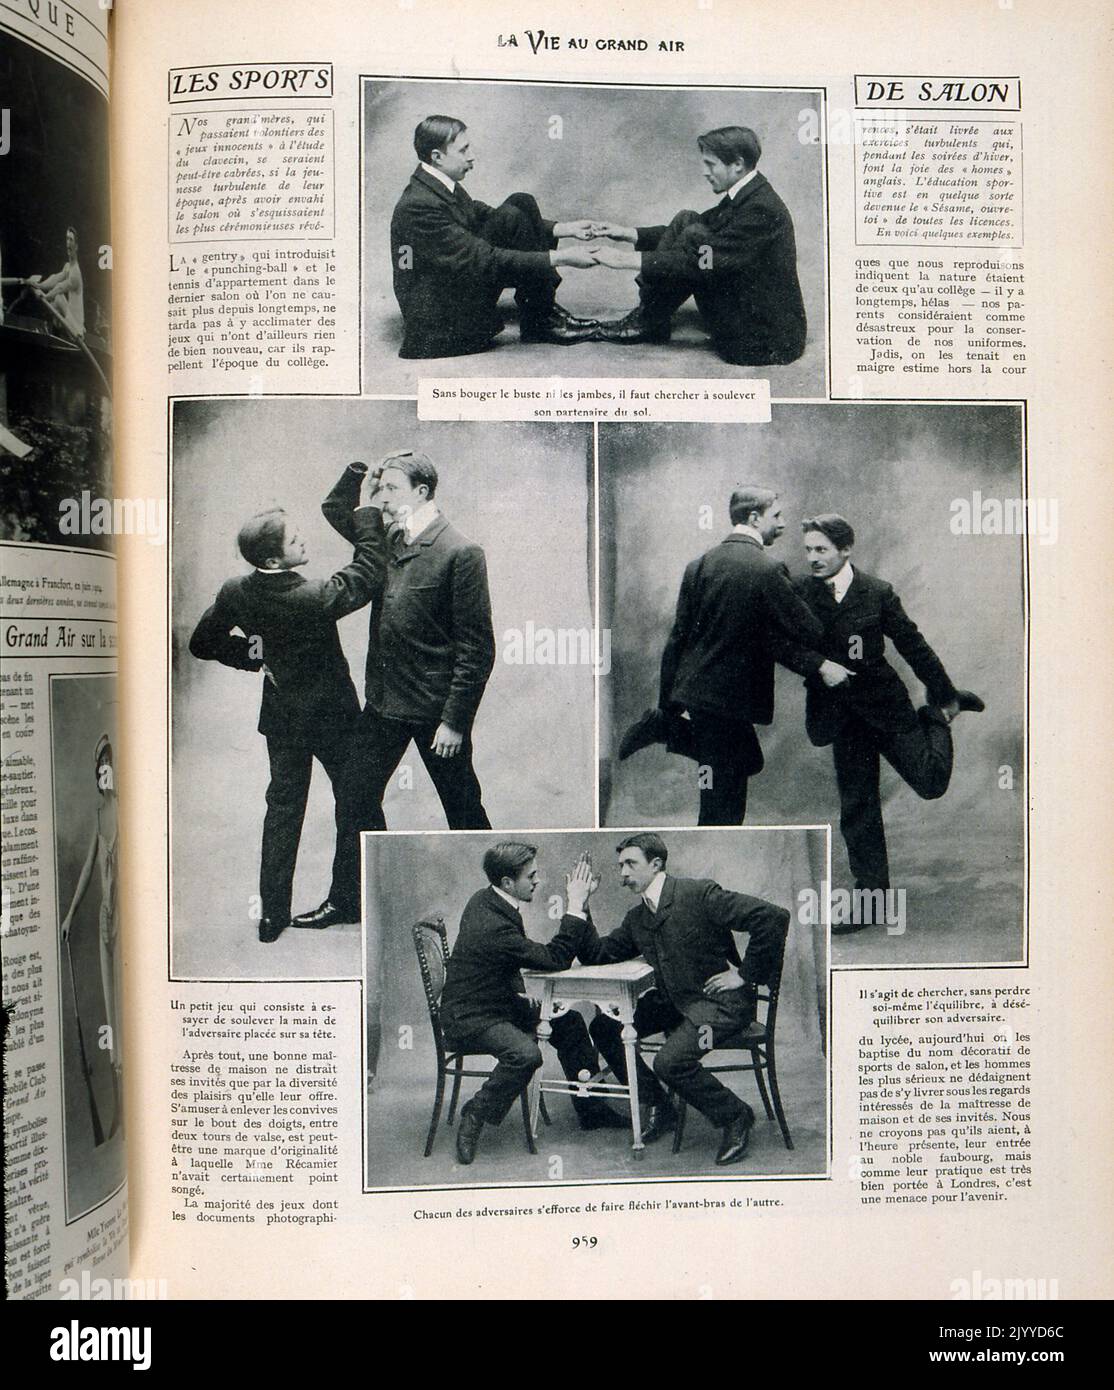 Aus dem Magazin La Vie au Grand Air (Life in the Outdoors); Schwarz-Weiß-Fotografien von Männern, die Kraftgesten demonstrieren, darunter Armringen auf einem Tisch, während sie einen Fuß in der Luft halten. Stockfoto